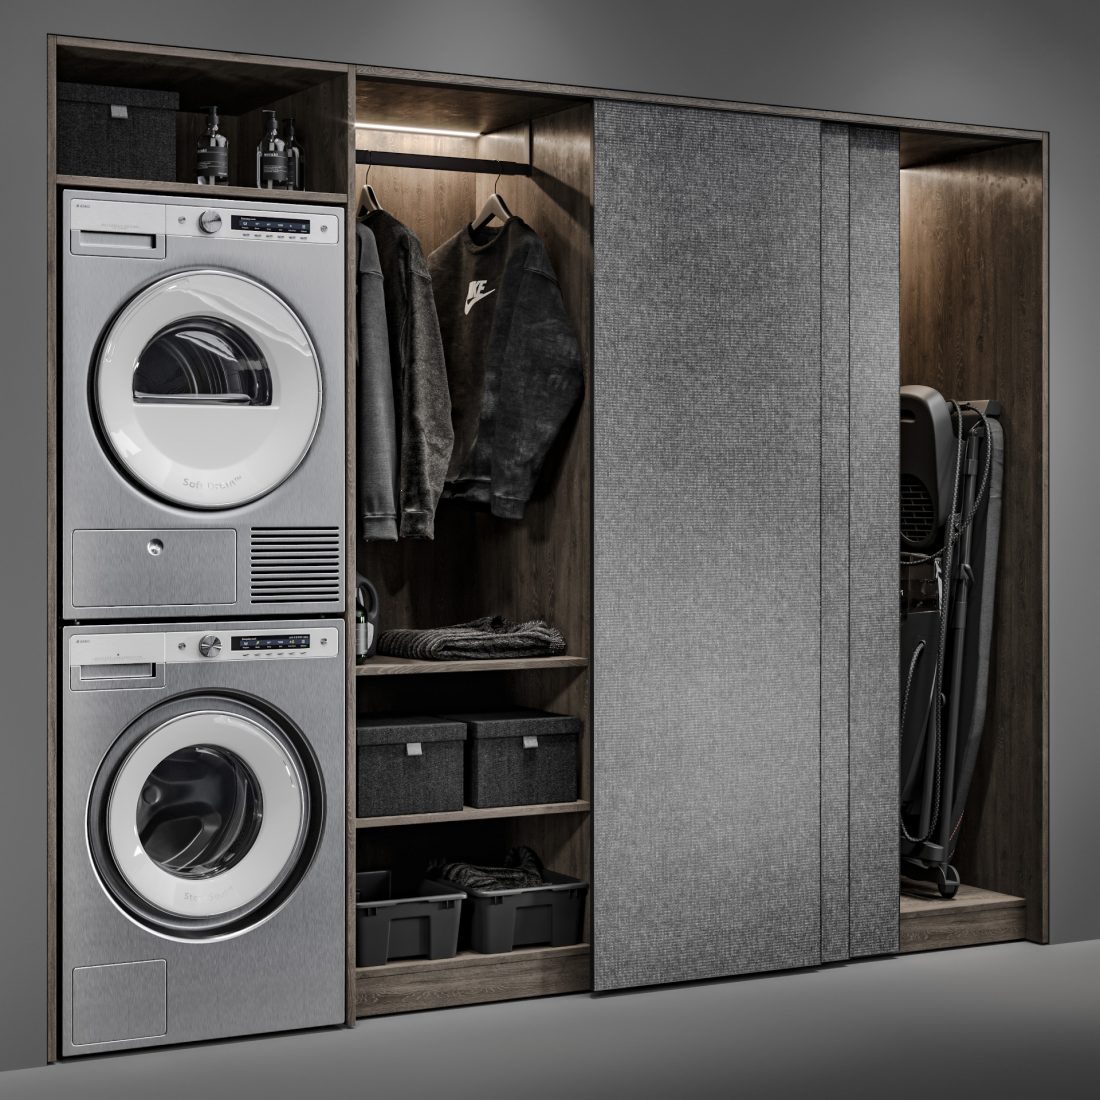 Laundry Room 0003 - 3D Model for VRay, Corona